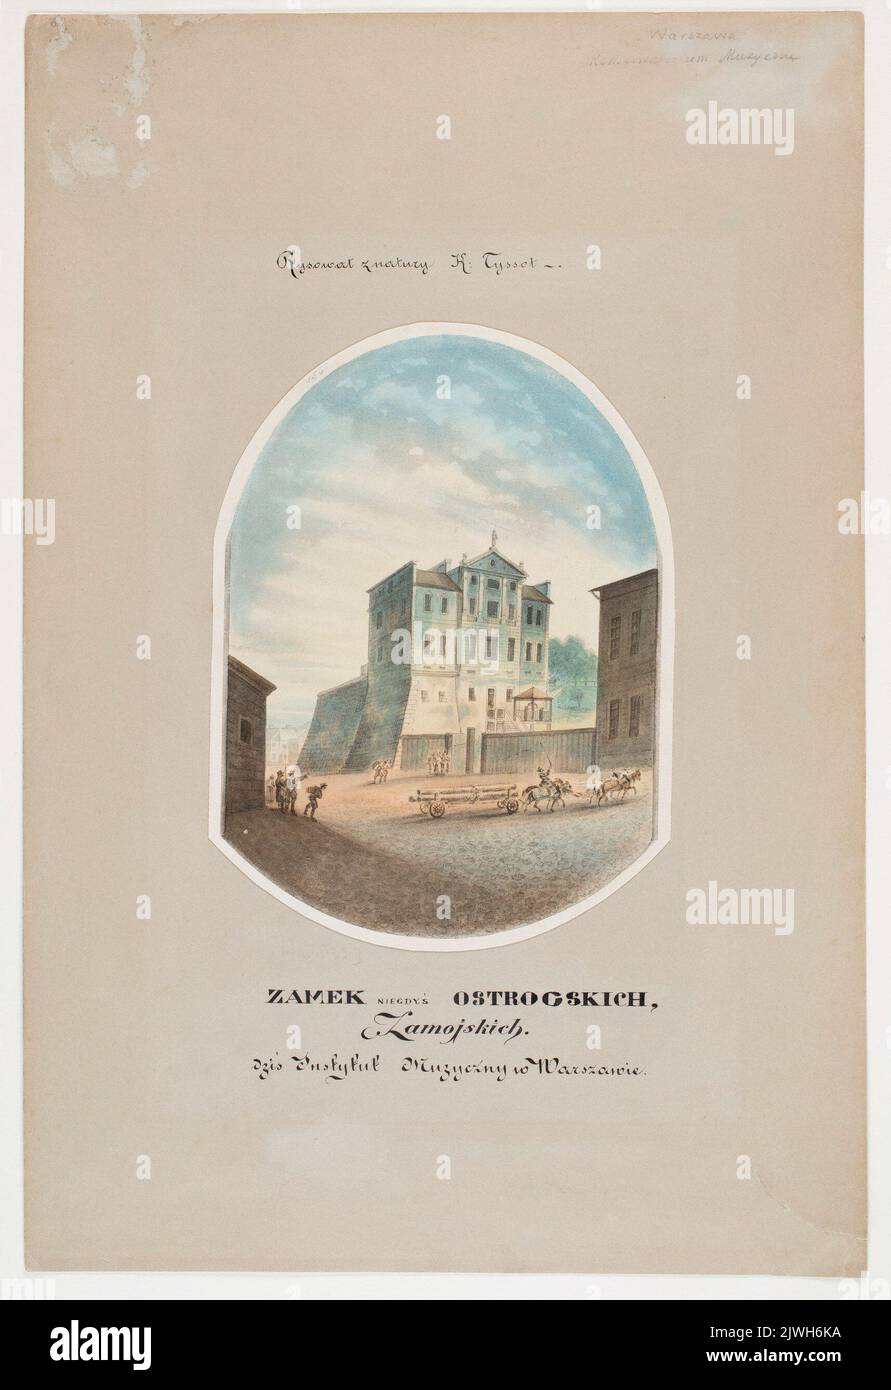 „Zamek niegdyś Ostrogskich, Zamoyskich, dziś Instytut Muzyczny w Warszawie“. Tysson, Karol (fl. 1840-1878), Maler Stockfoto